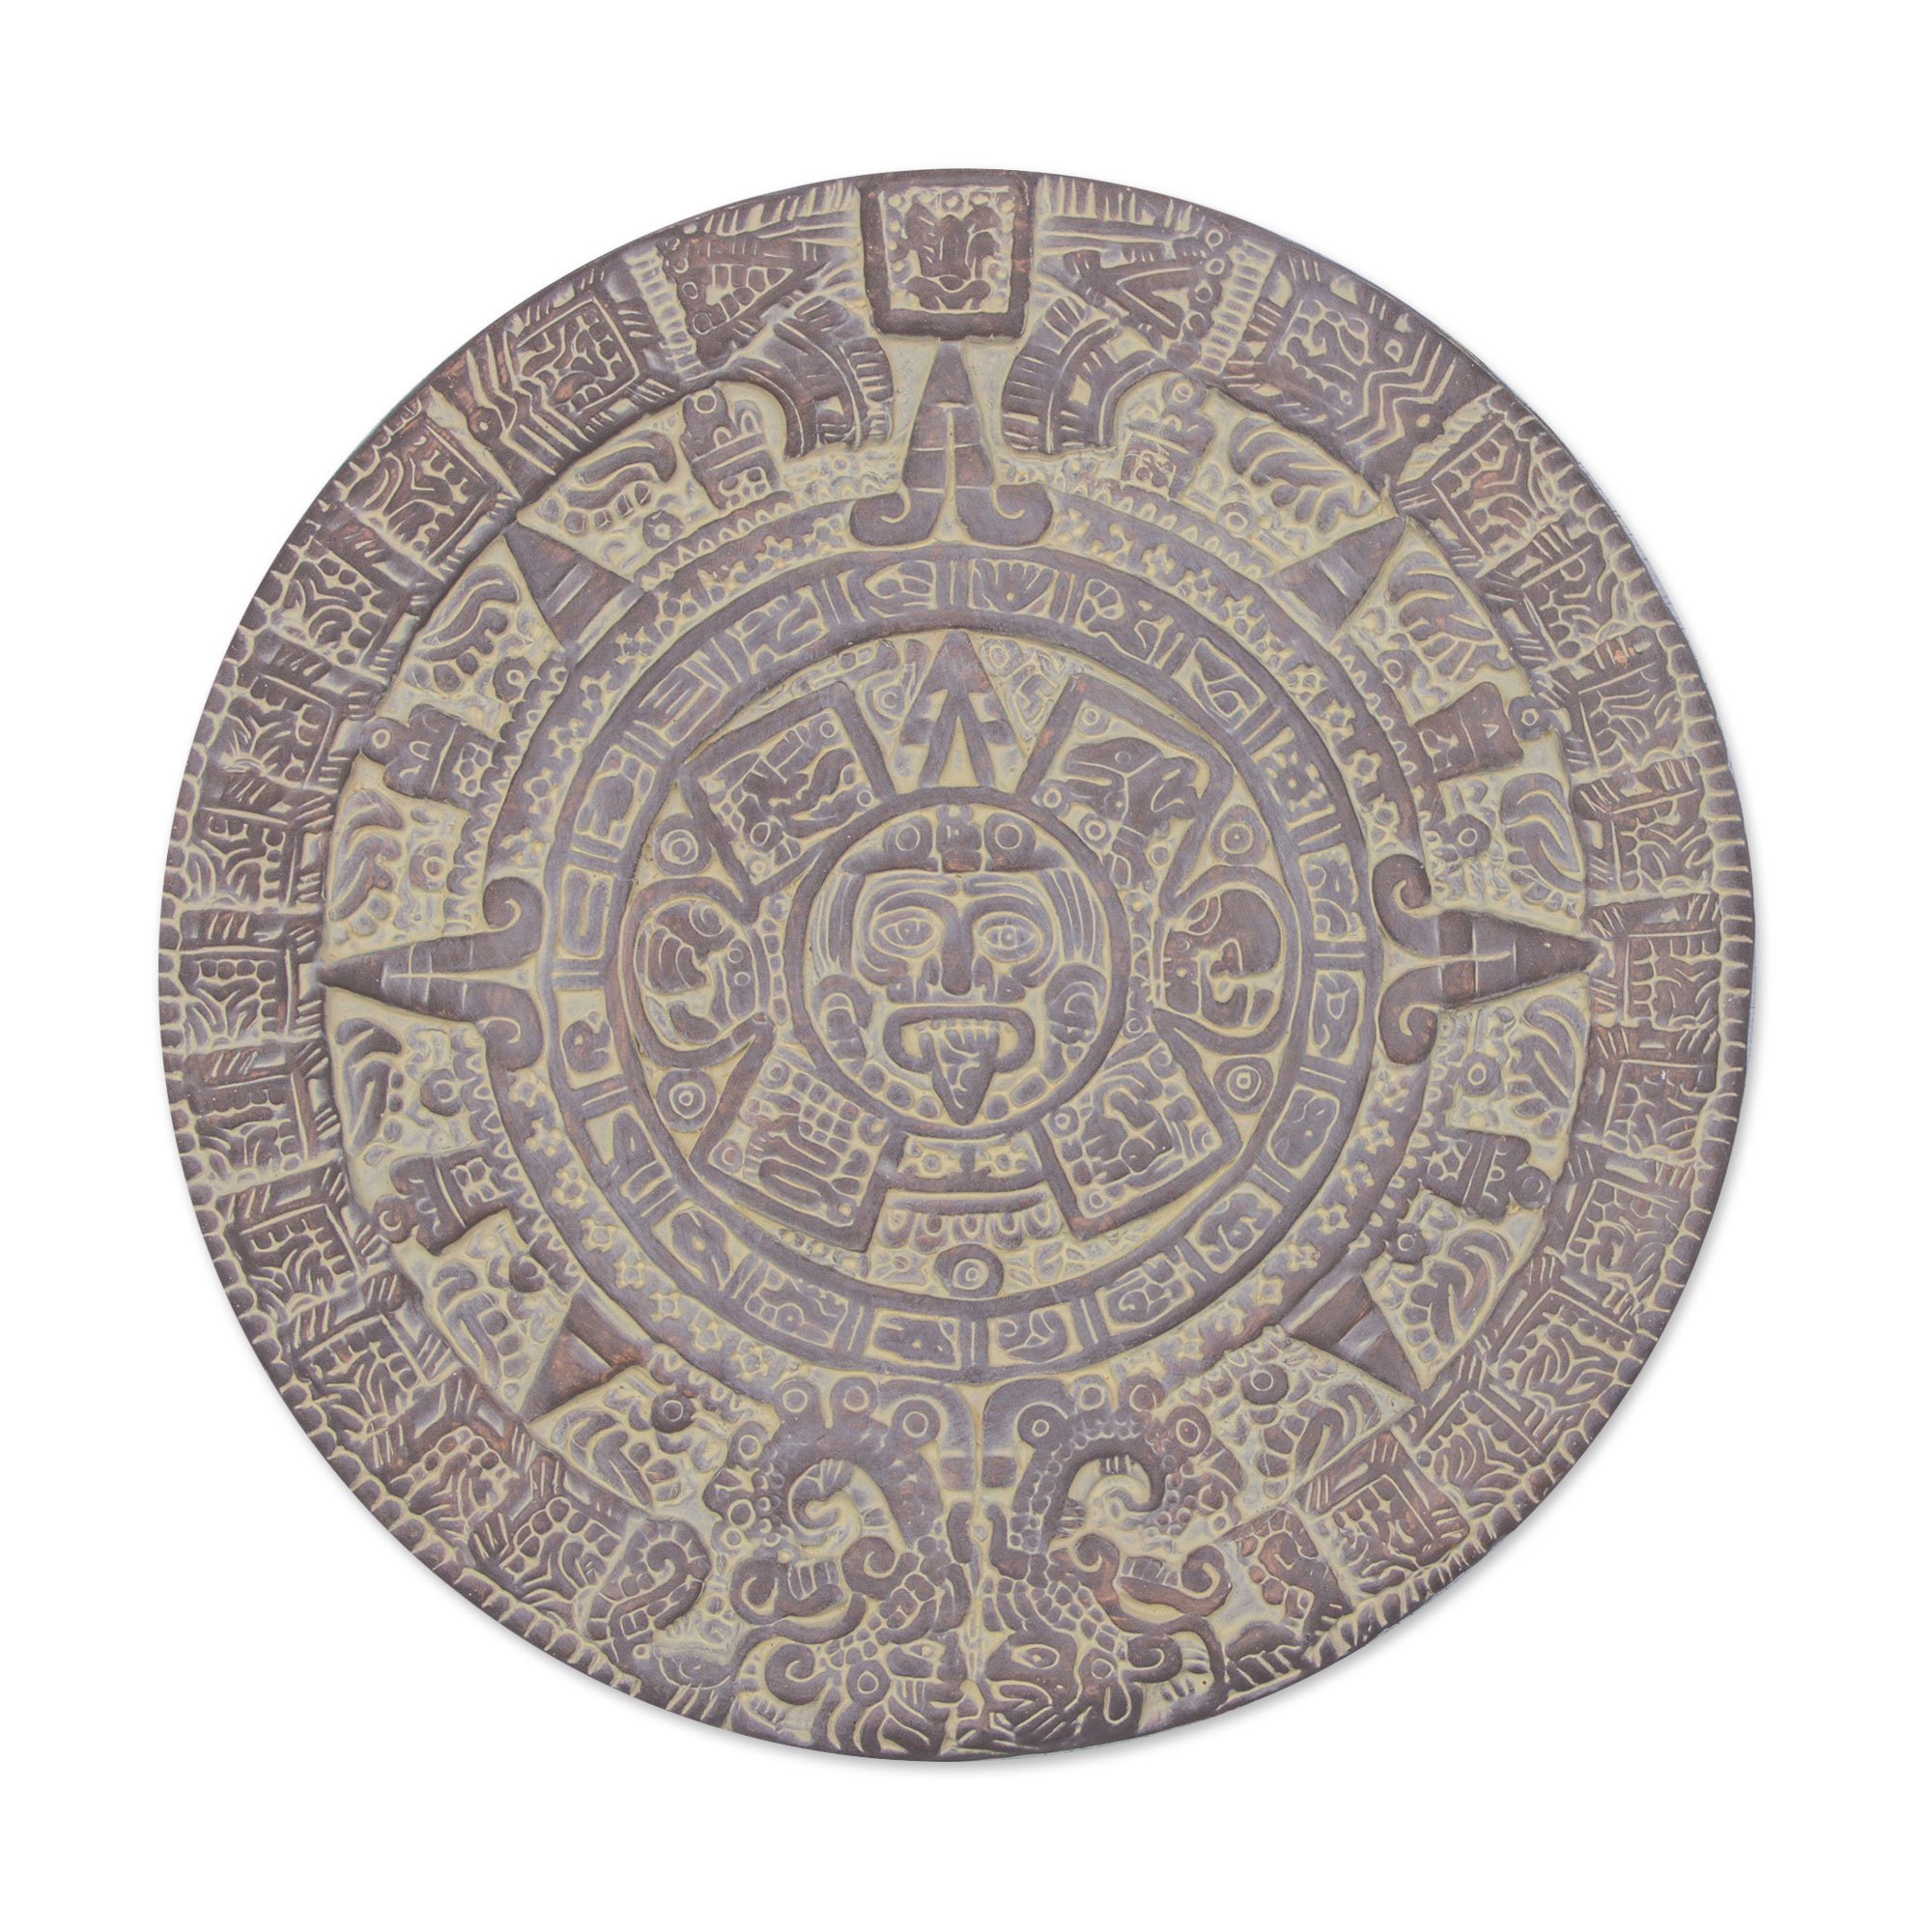 aztec calendar glyphs